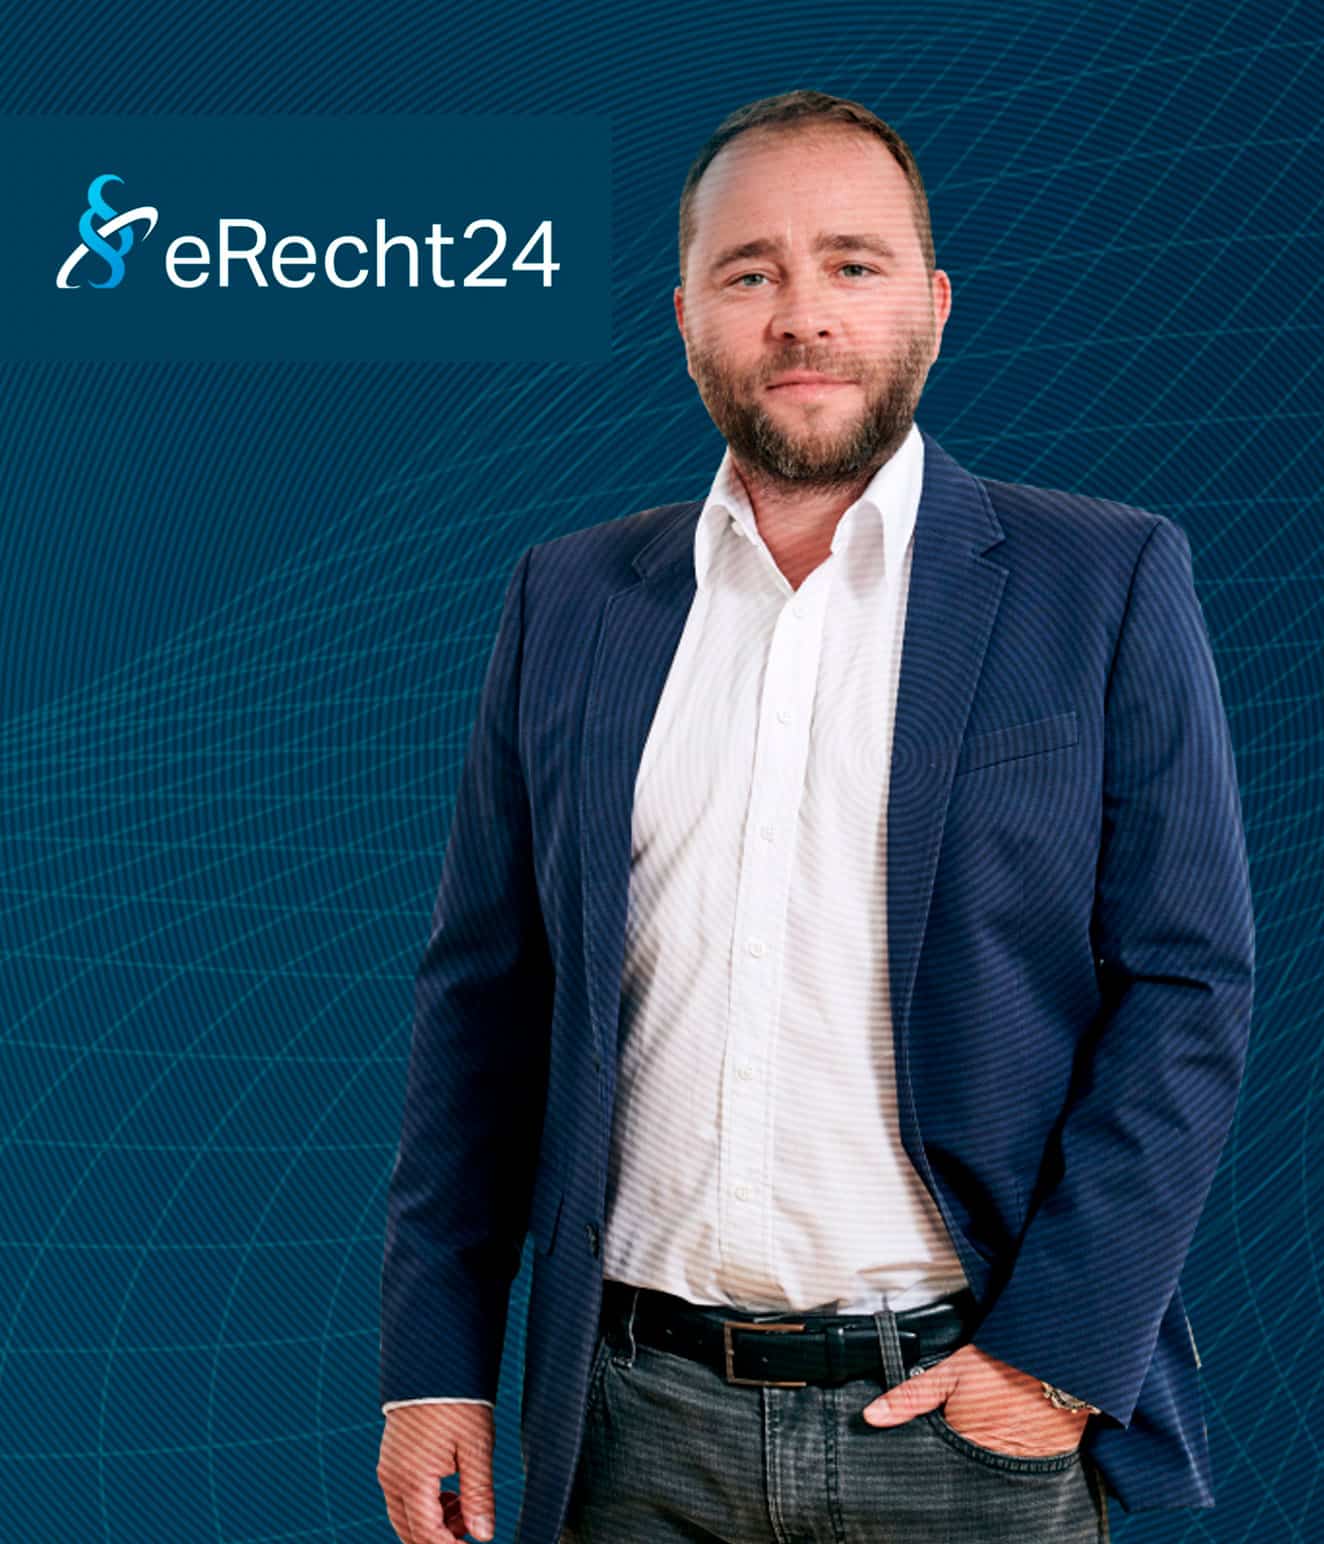 eRecht24 - Rechtsanwalt Siebert ist der Gründer des Premium-Services